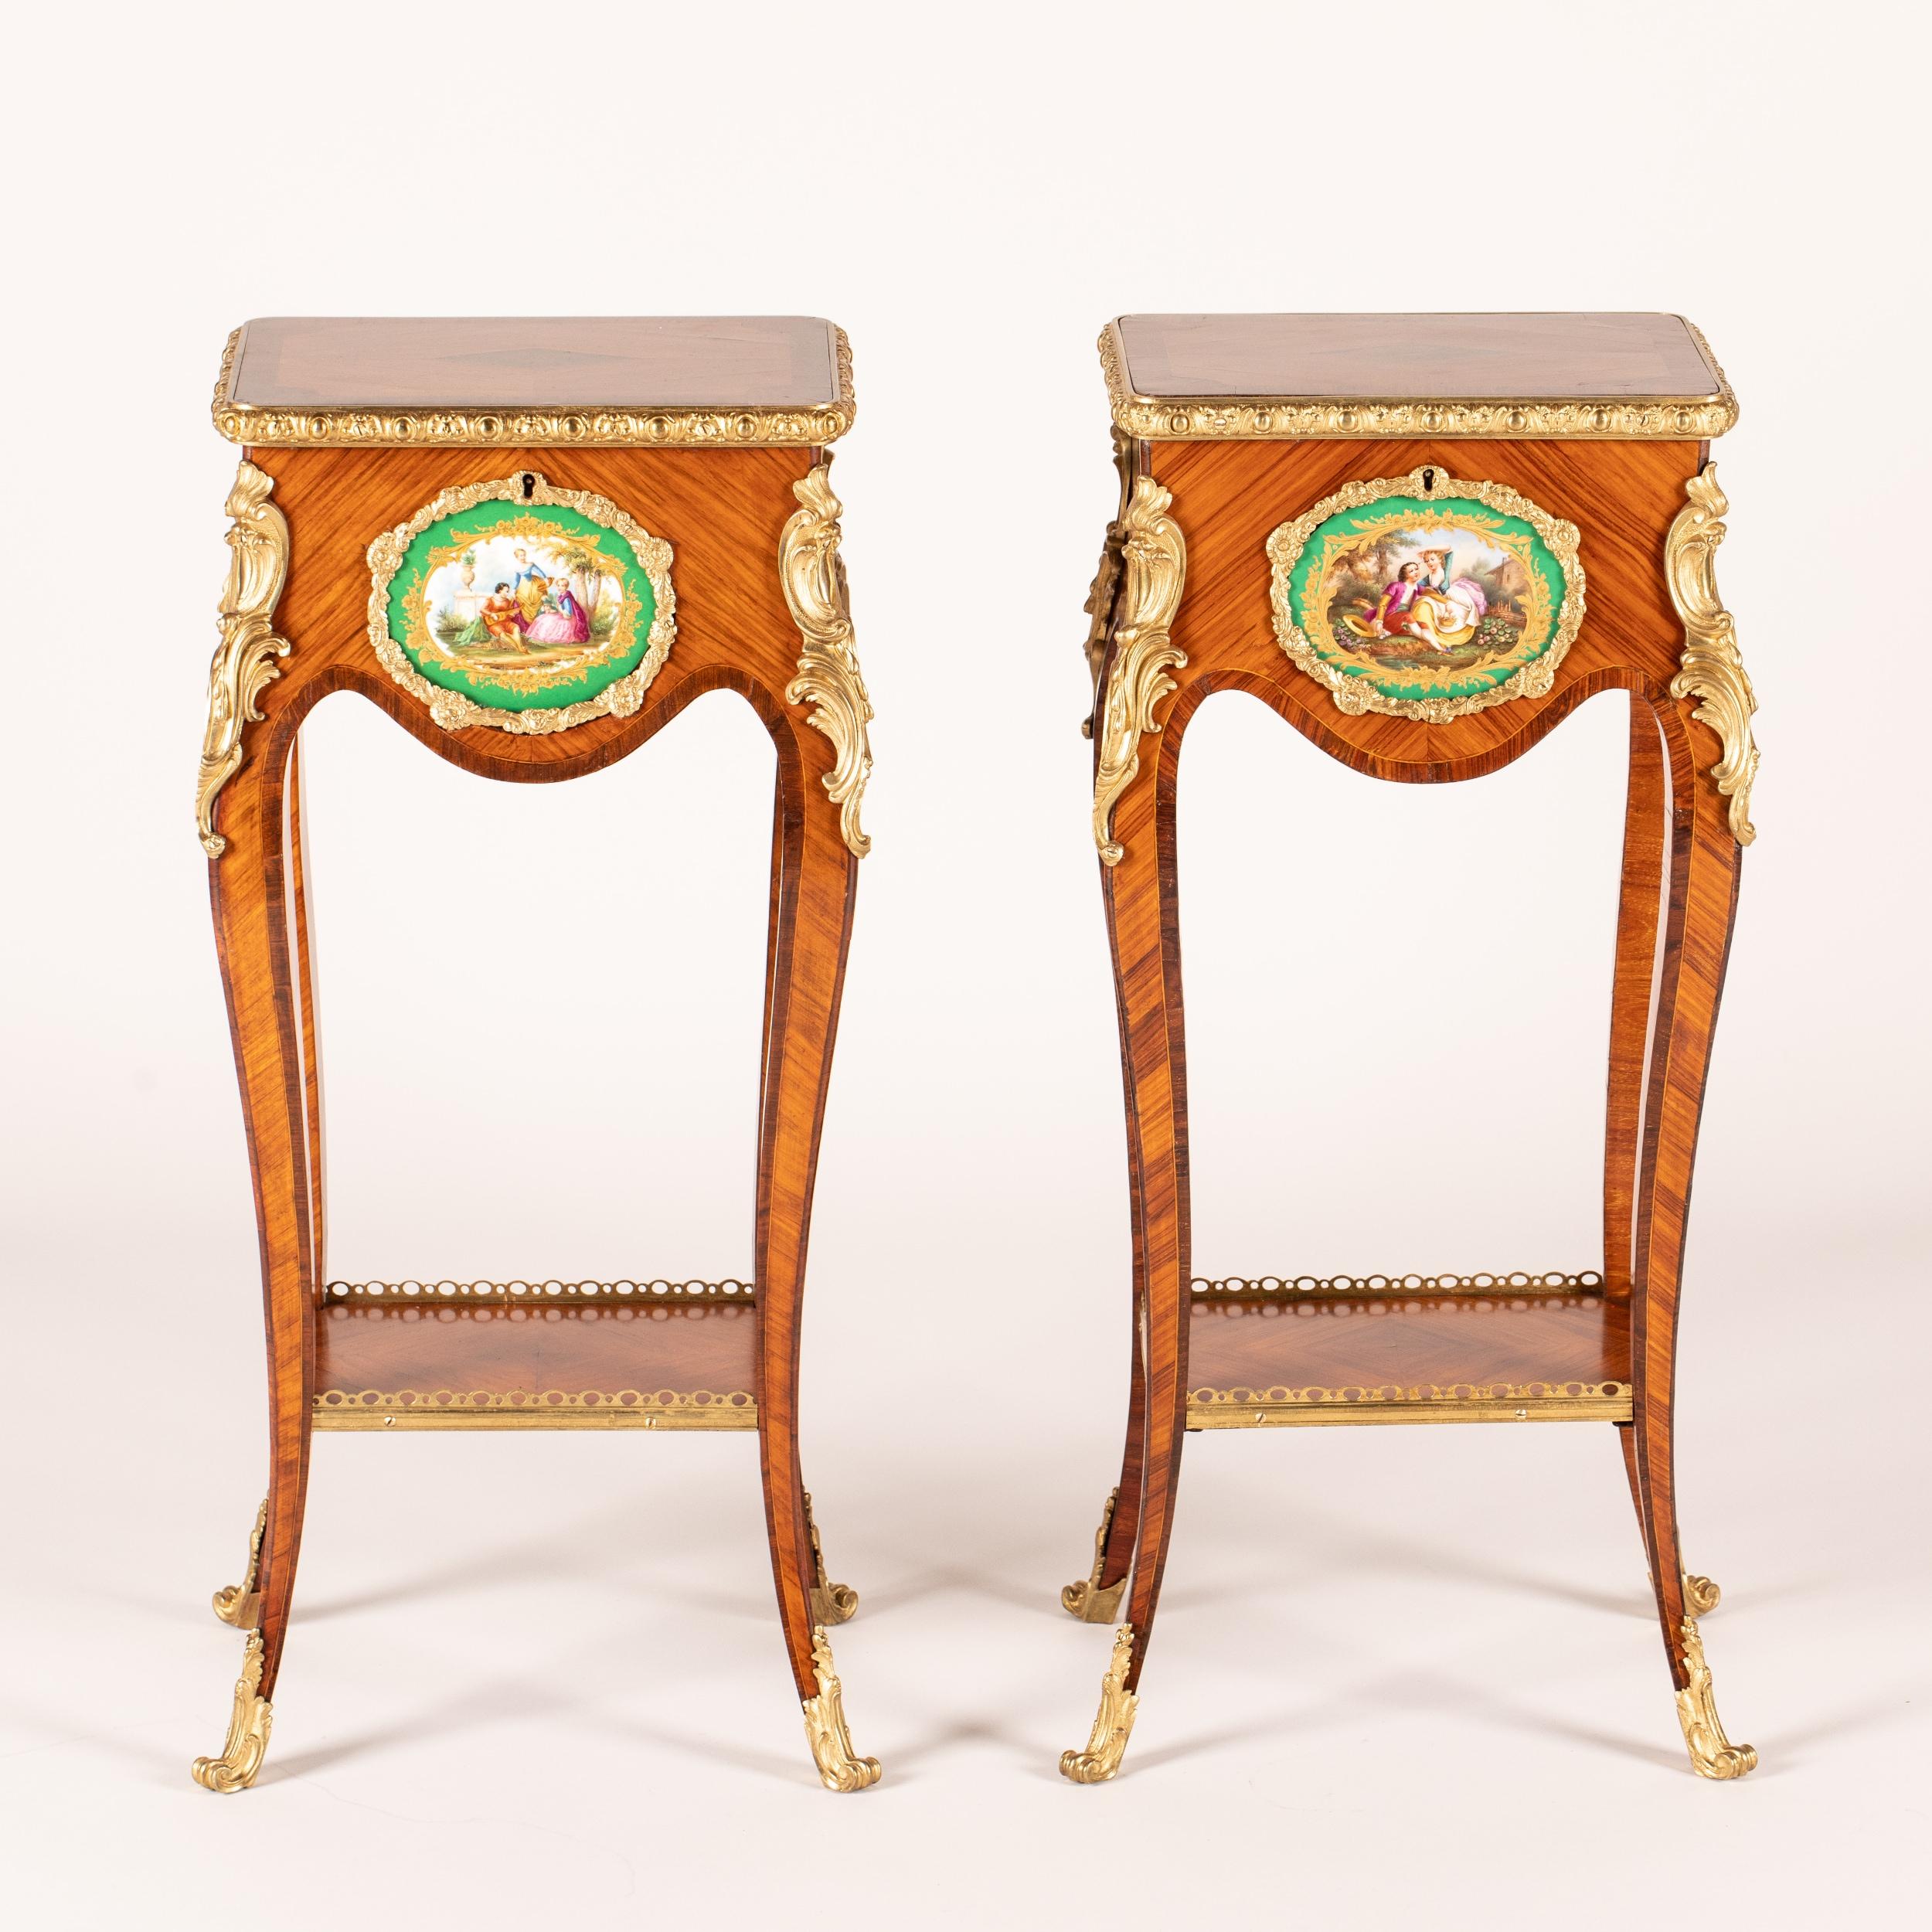 Une paire de tables d'appoint dans le goût Louis XV Transitionnel

Construit en bois de tulipier, avec du bois royal utilisé pour les bandes transversales et la marqueterie, ainsi que pour le buis, et orné de montures en bronze doré ; de forme